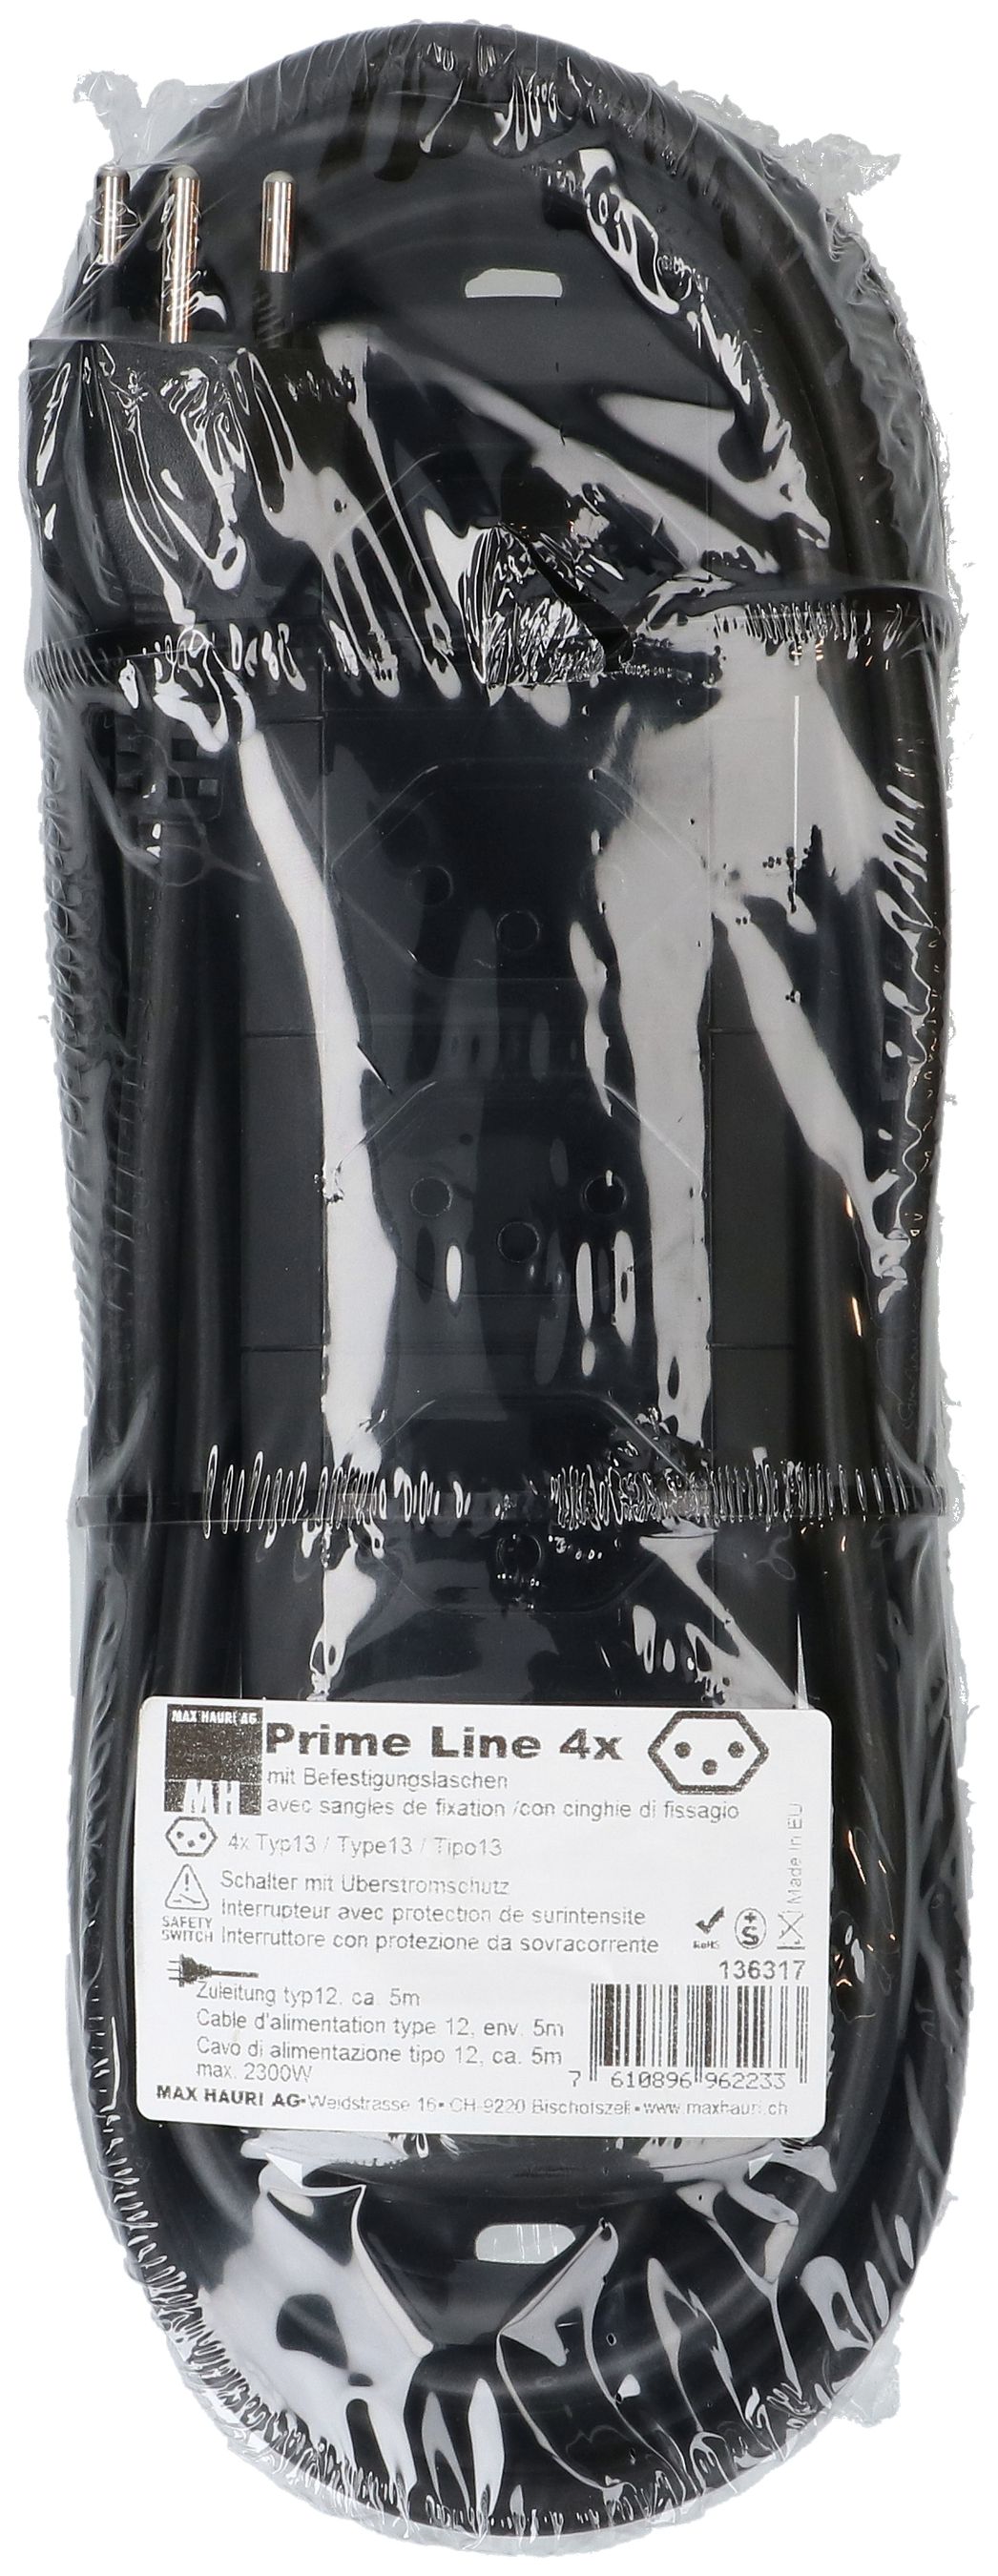 Steckdosenleiste Prime Line 4x Typ 13 schwarz Schalter 5m